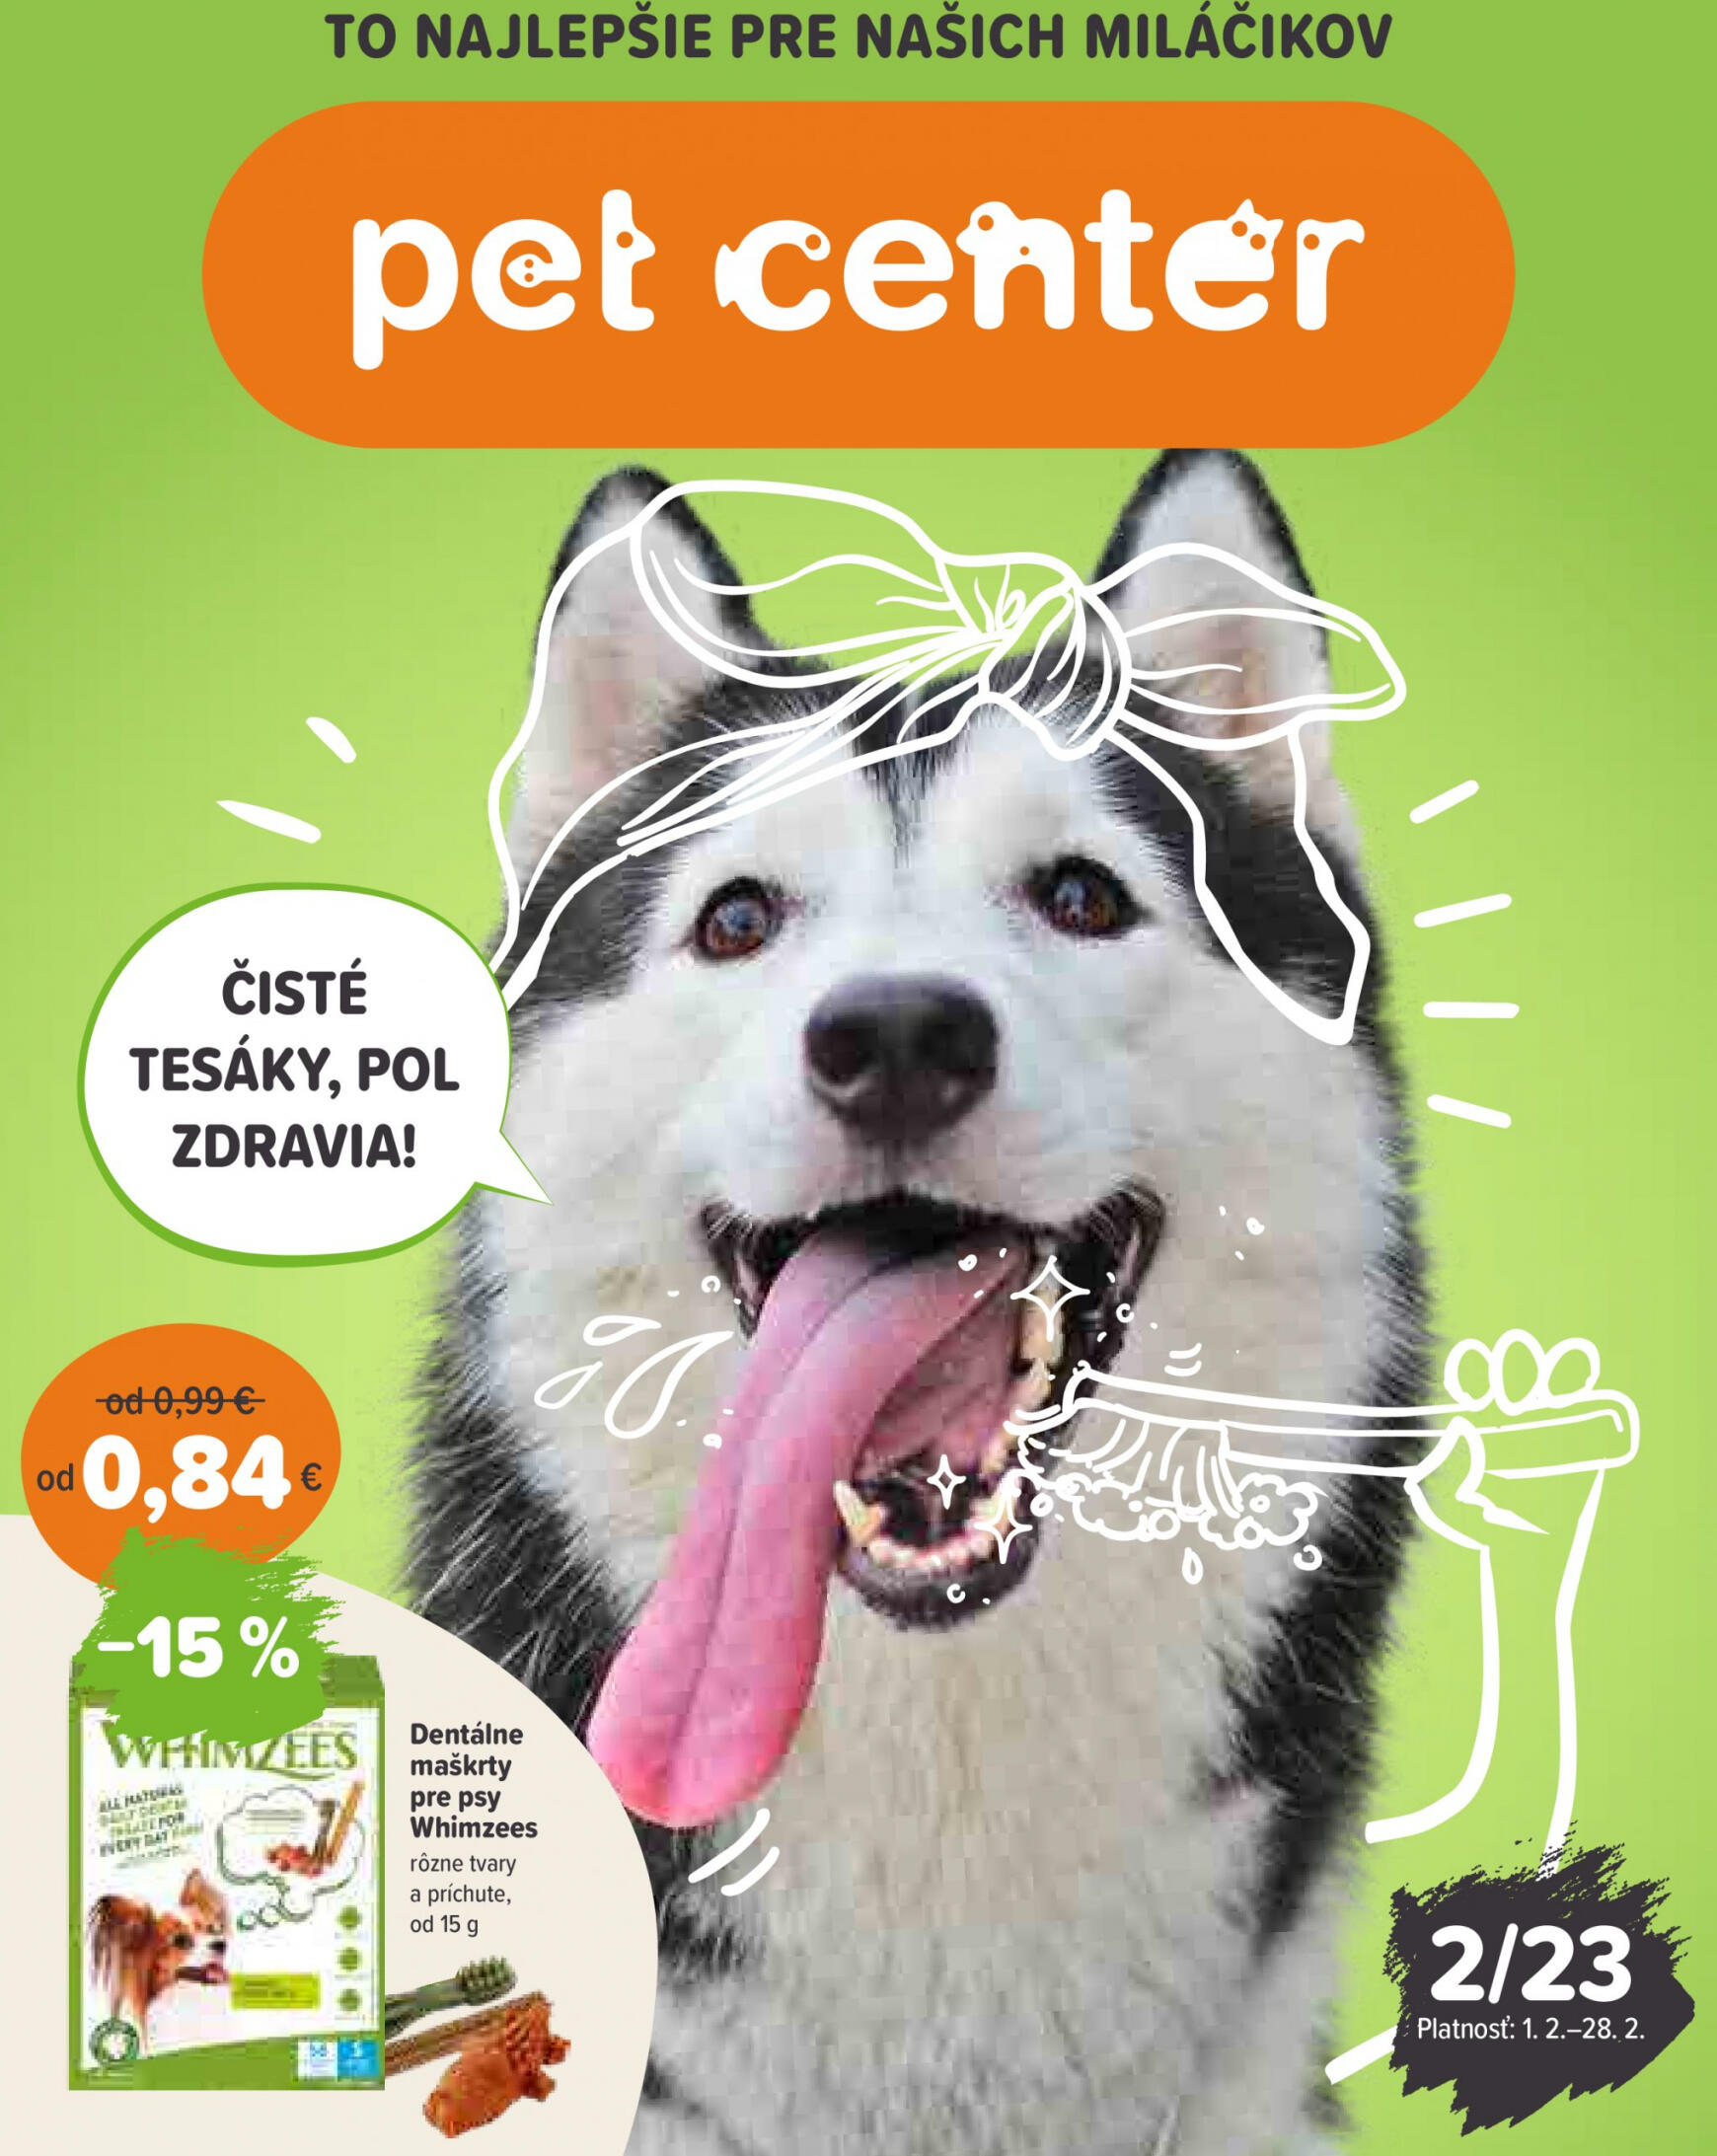 petcenter - Pet Center